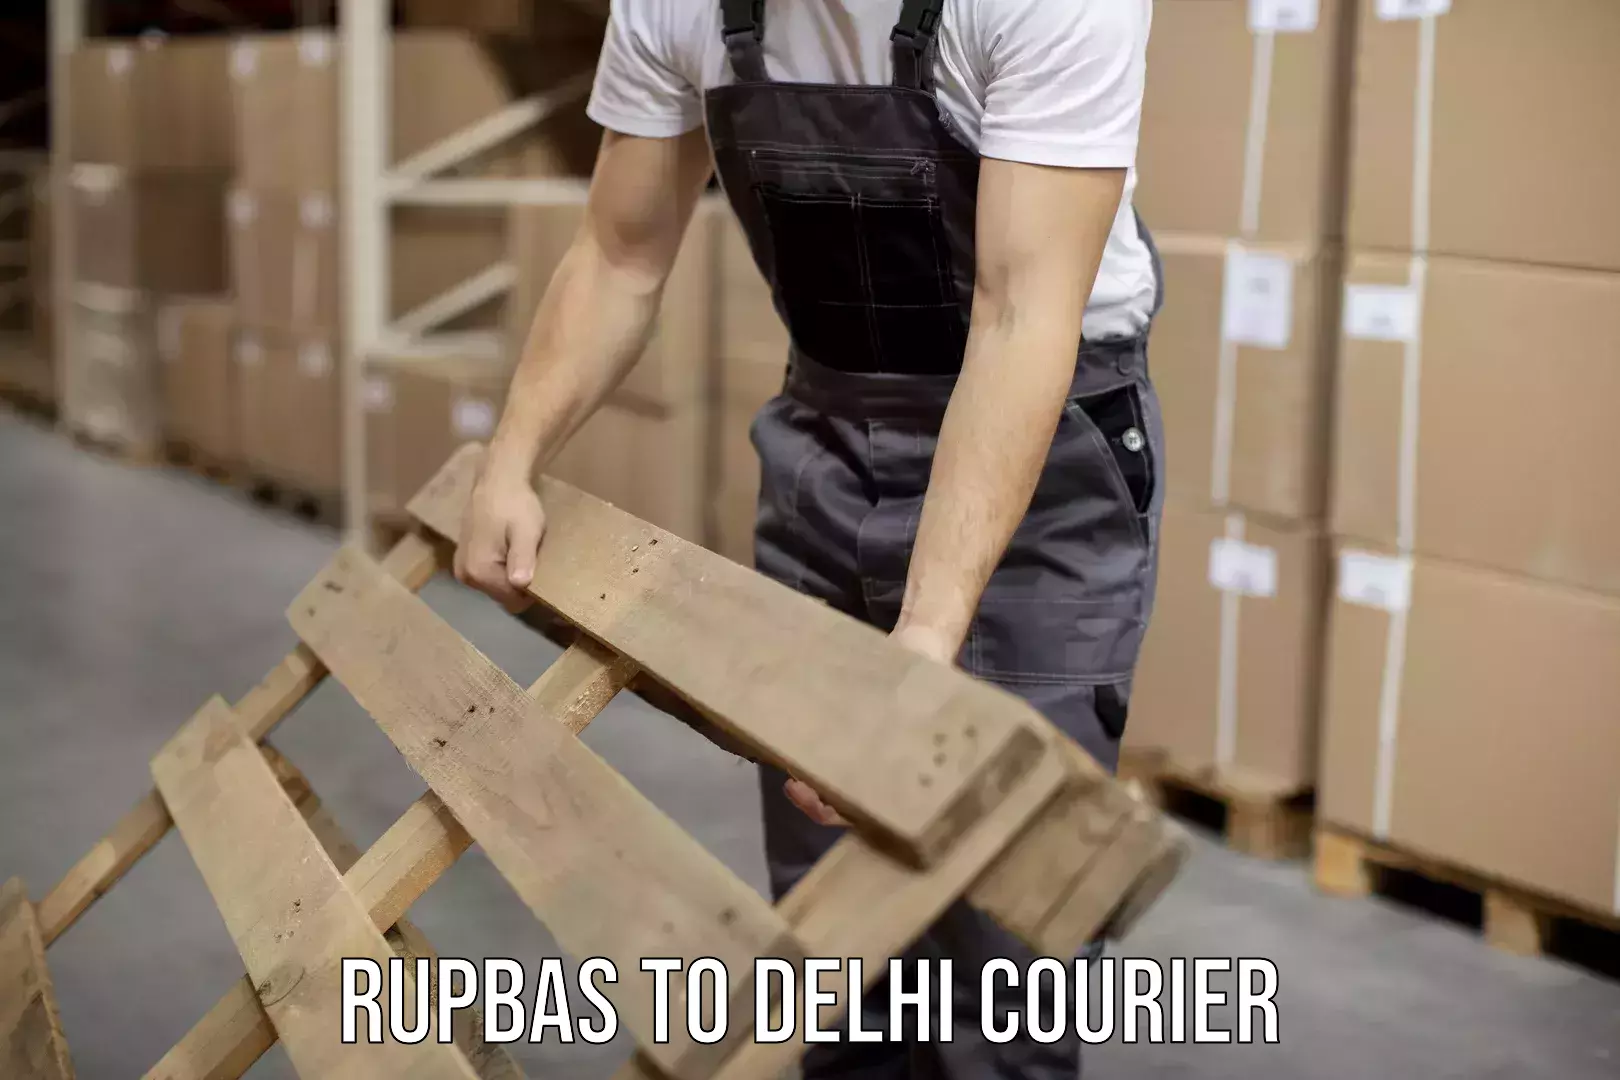 Bulk courier orders Rupbas to Sarojini Nagar